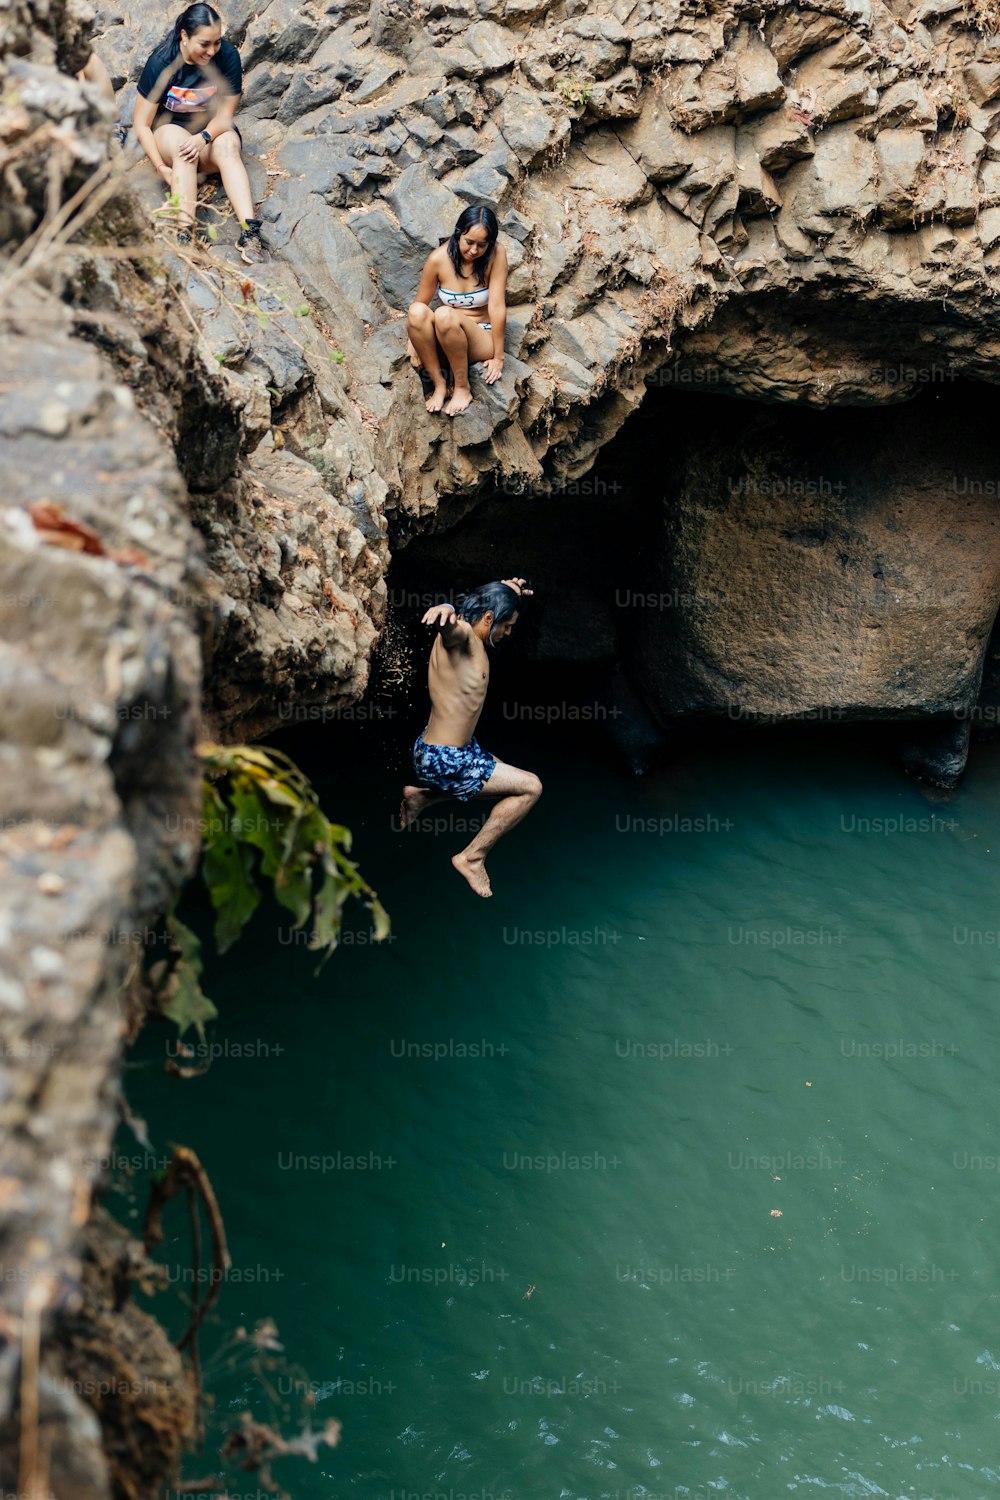 절벽에서 물속으로 뛰어드는 한 무리의 사람들